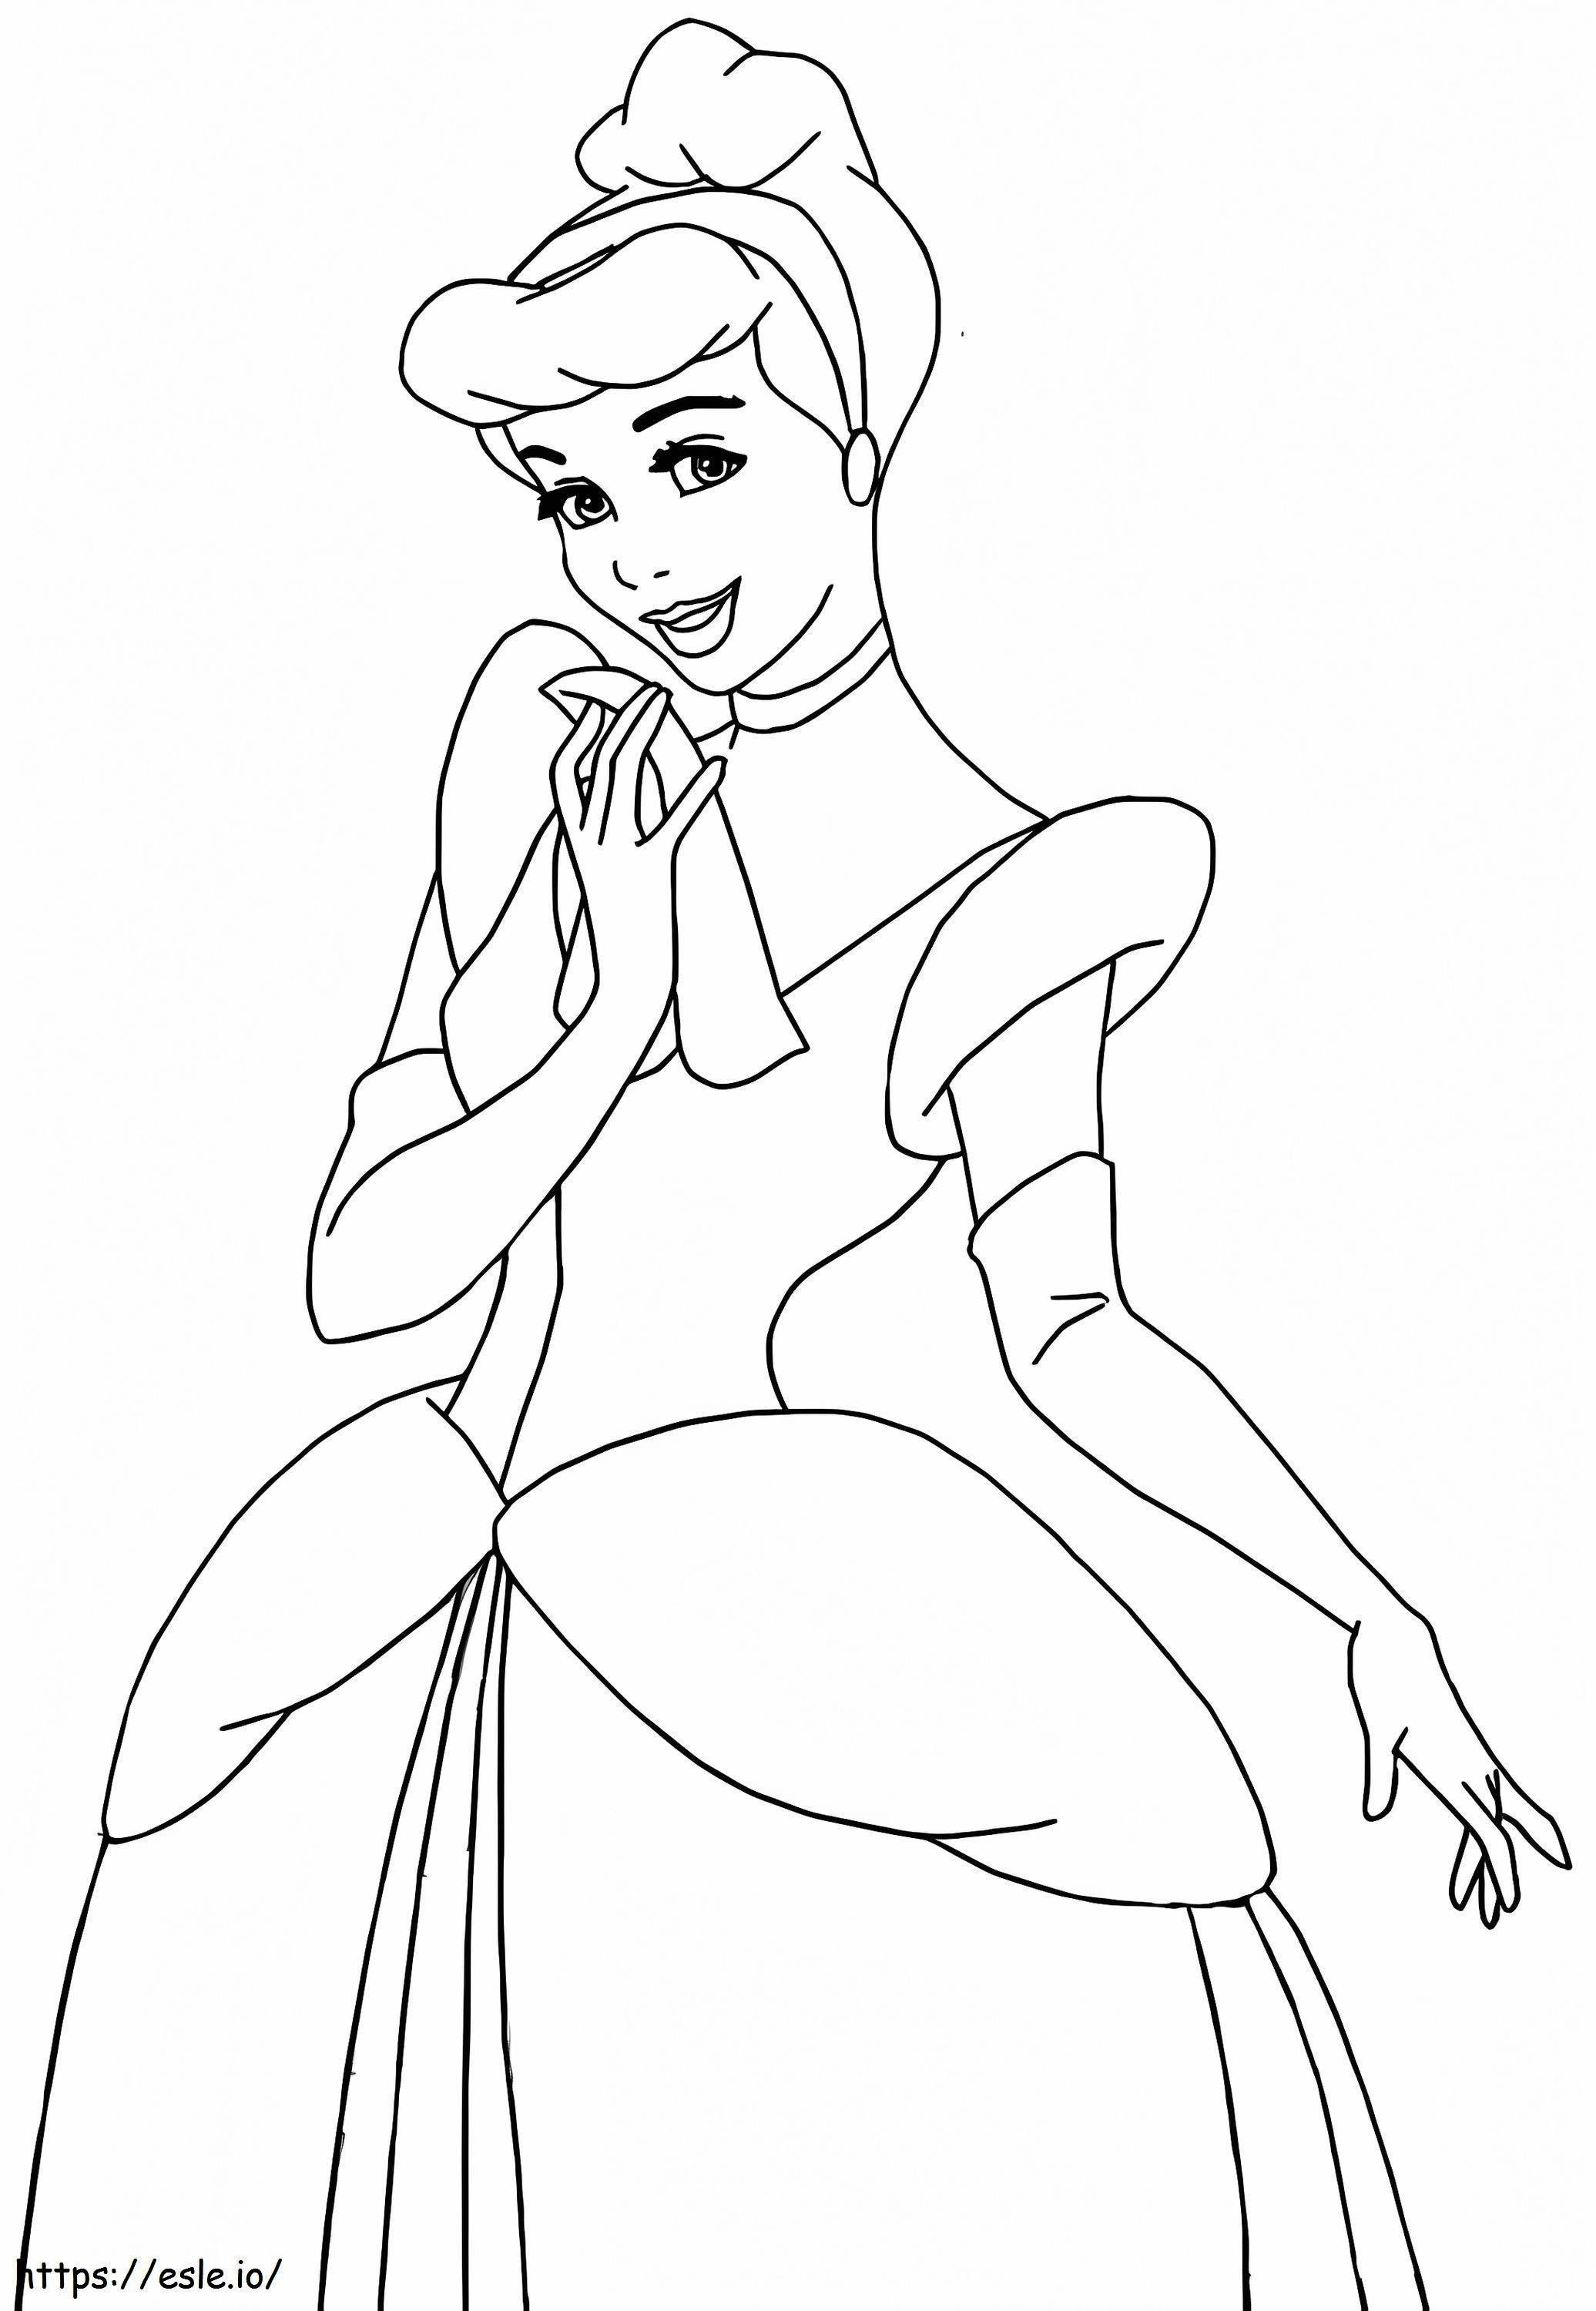 La principessa Disney Cenerentola da colorare